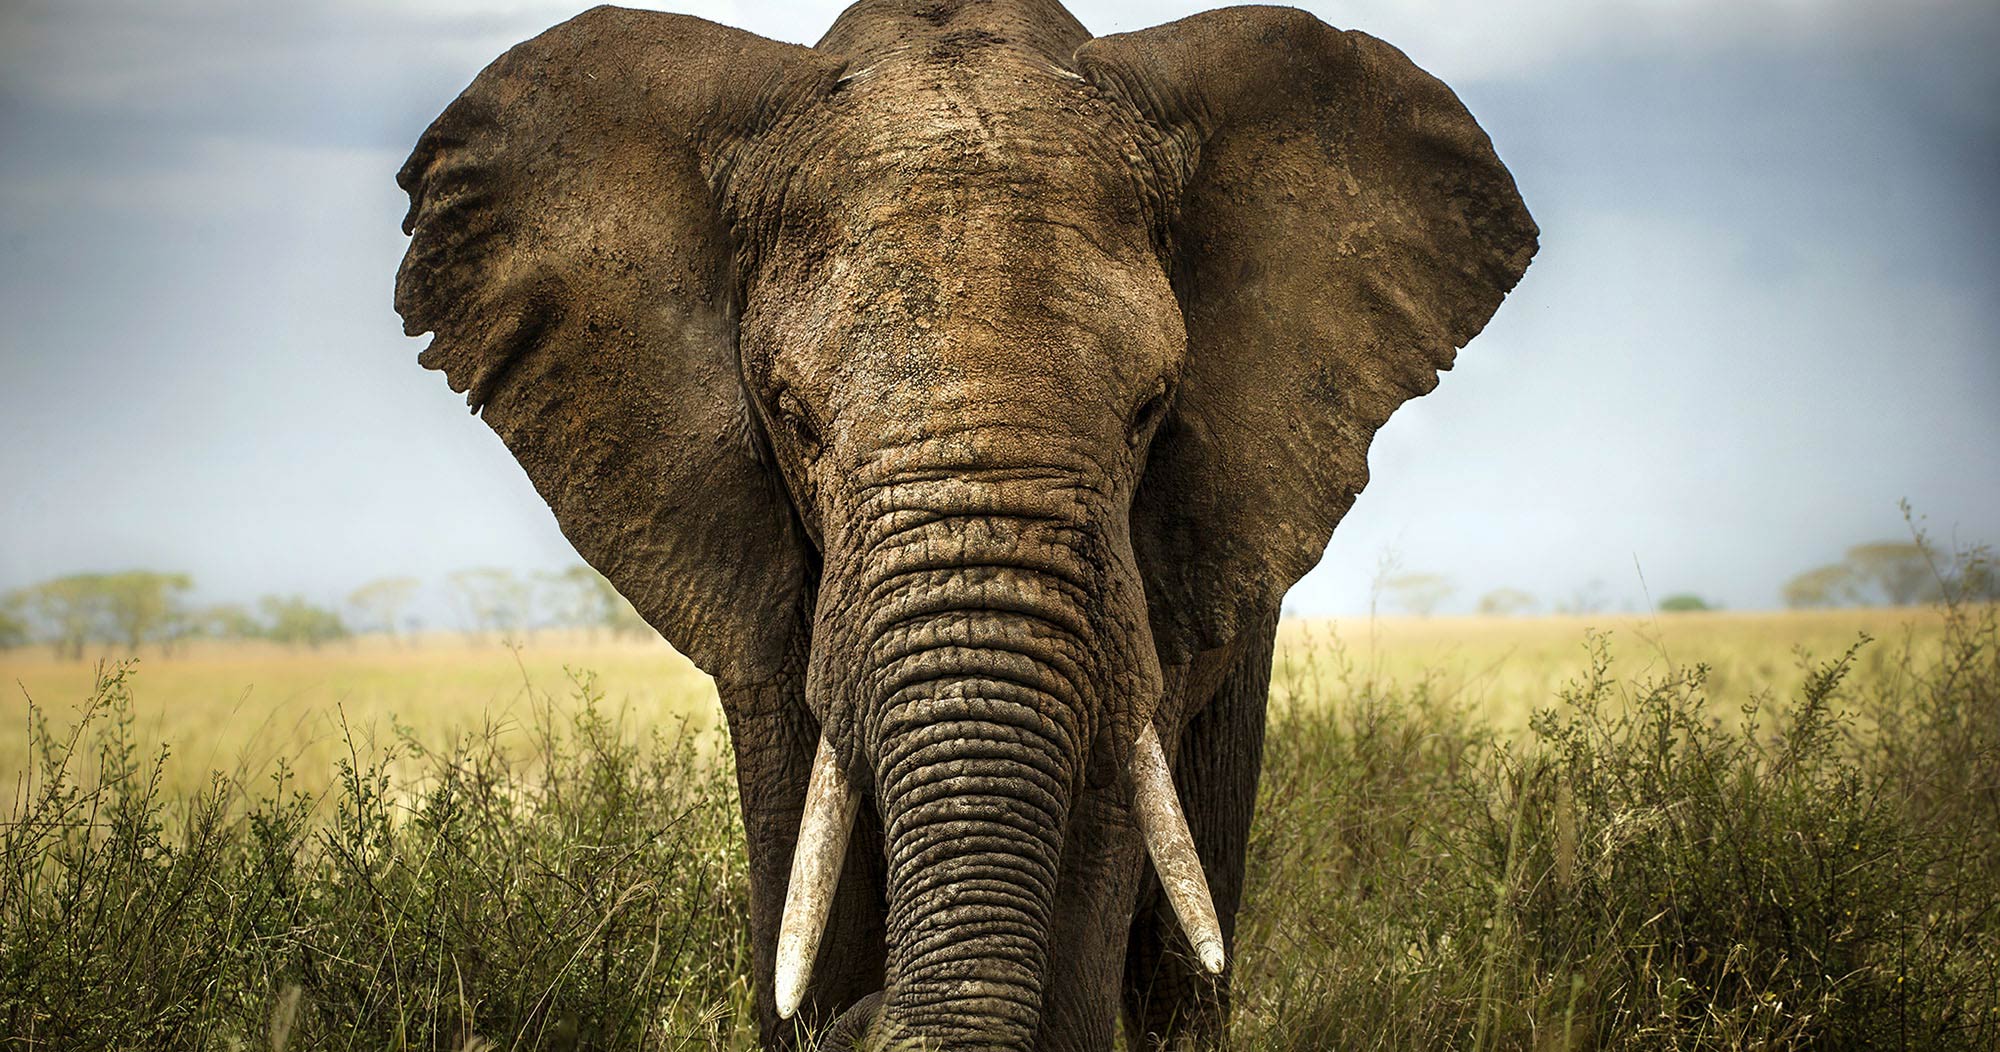 Manyeleti Big 5 safari elephant